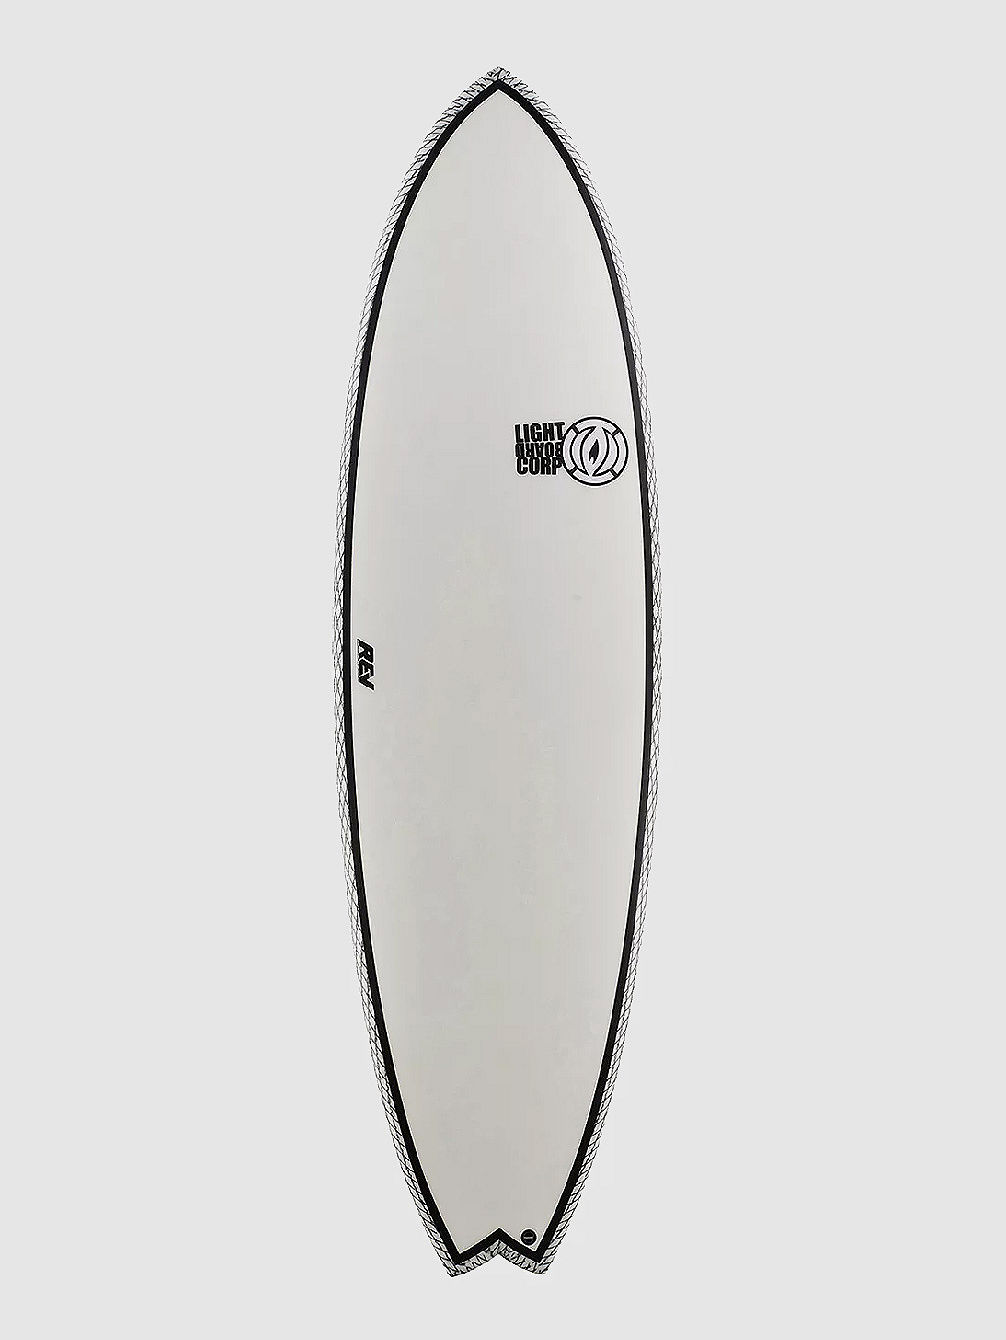 Truvalli Fish Cv Pro 6&amp;#039;4 Planche de surf